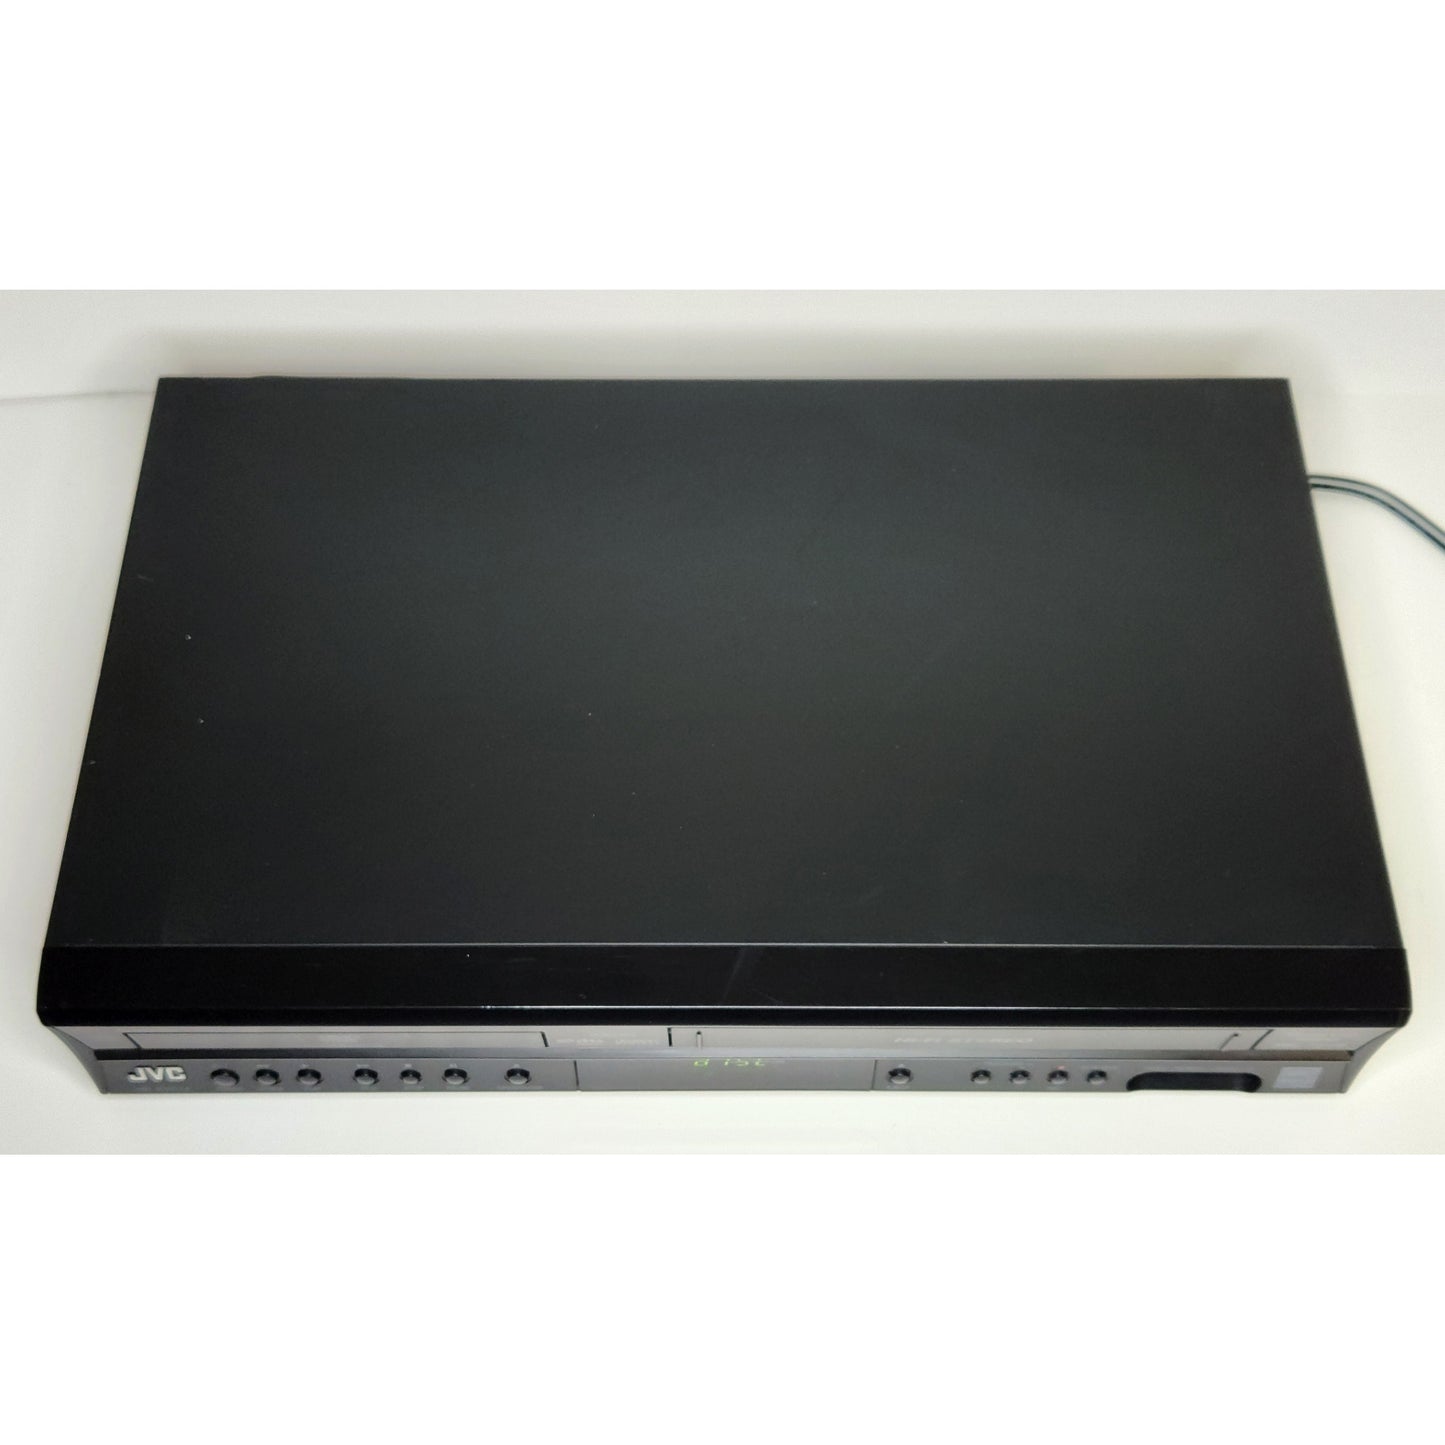 JVC HR-XVC14BU VCR/DVD Player Combo - Top